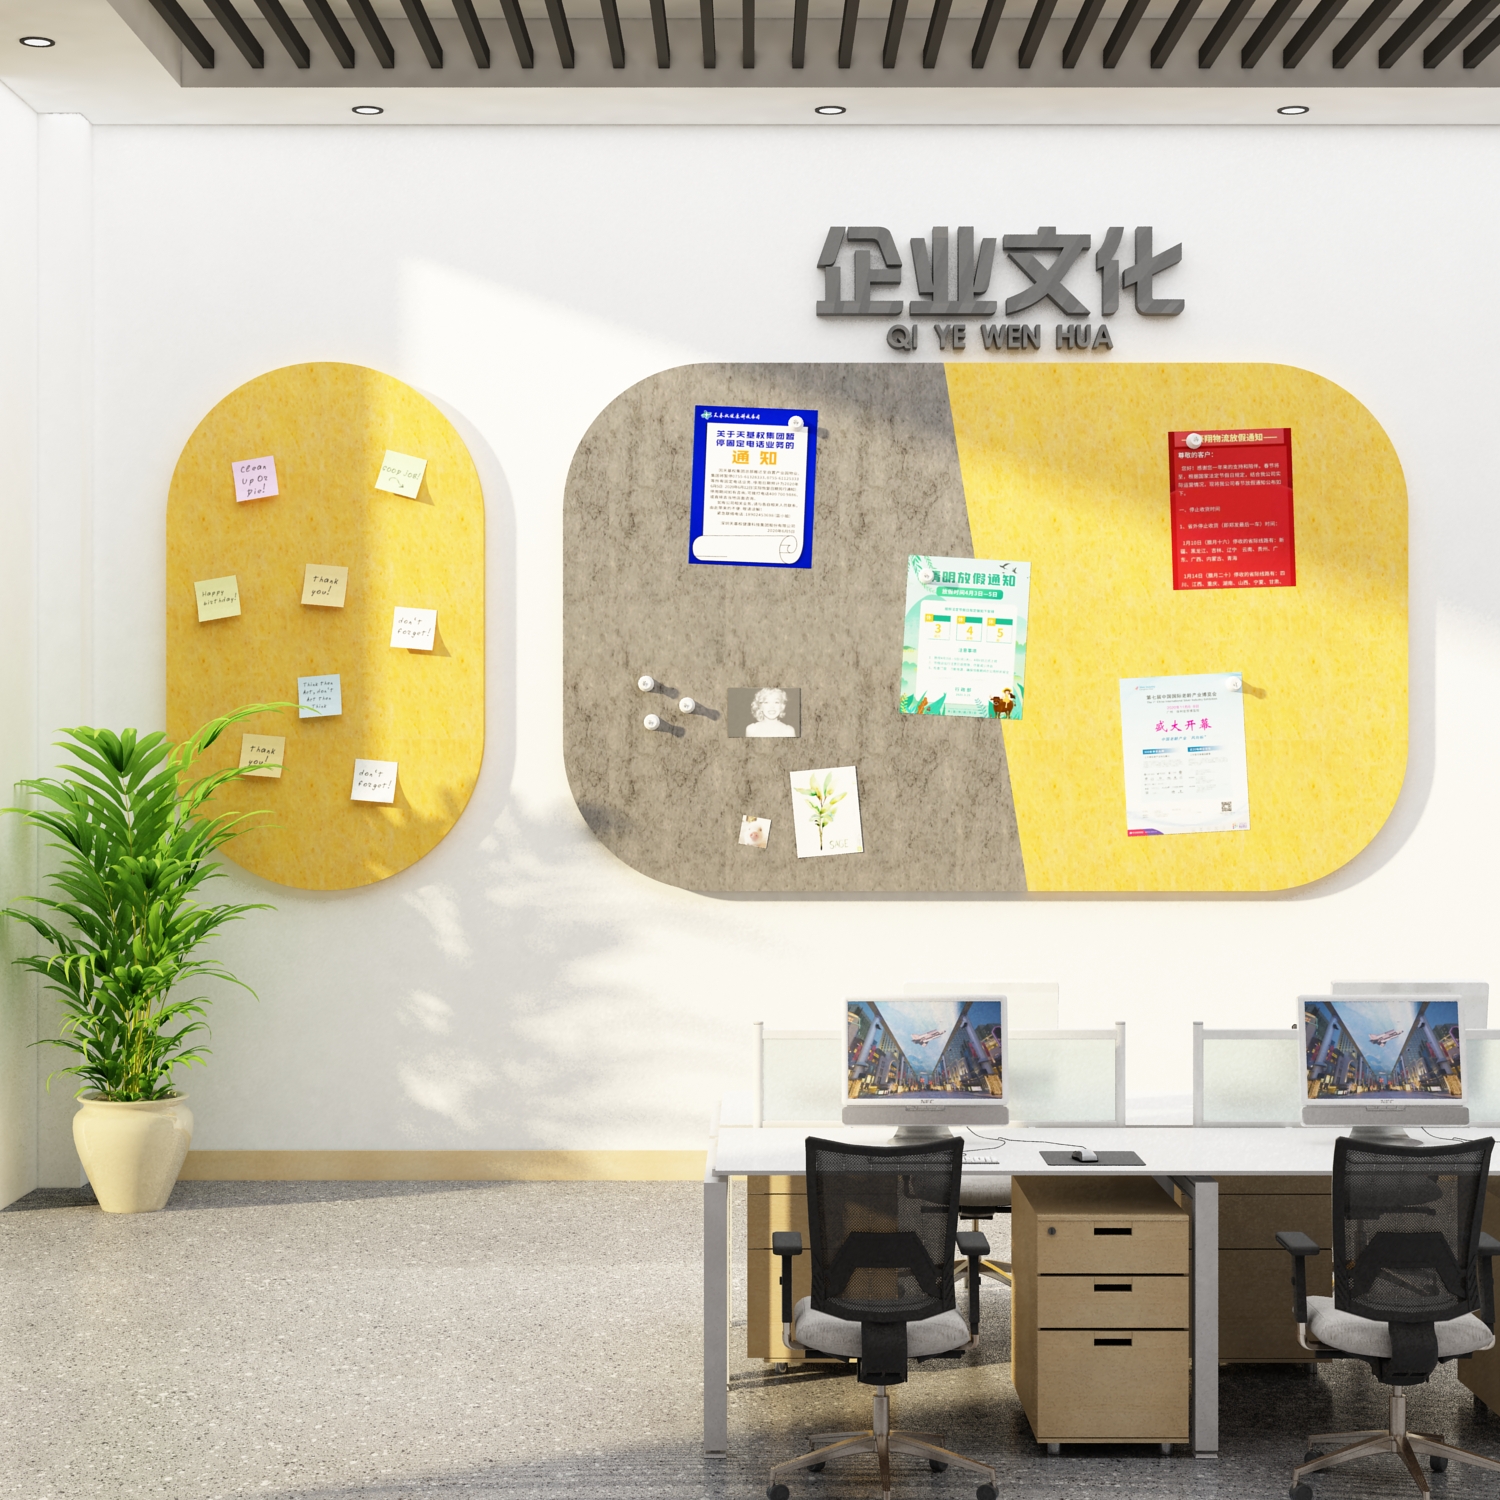 臻选办公室宣传公告栏展示板员工风采照片墙面装饰企业文化公司毛